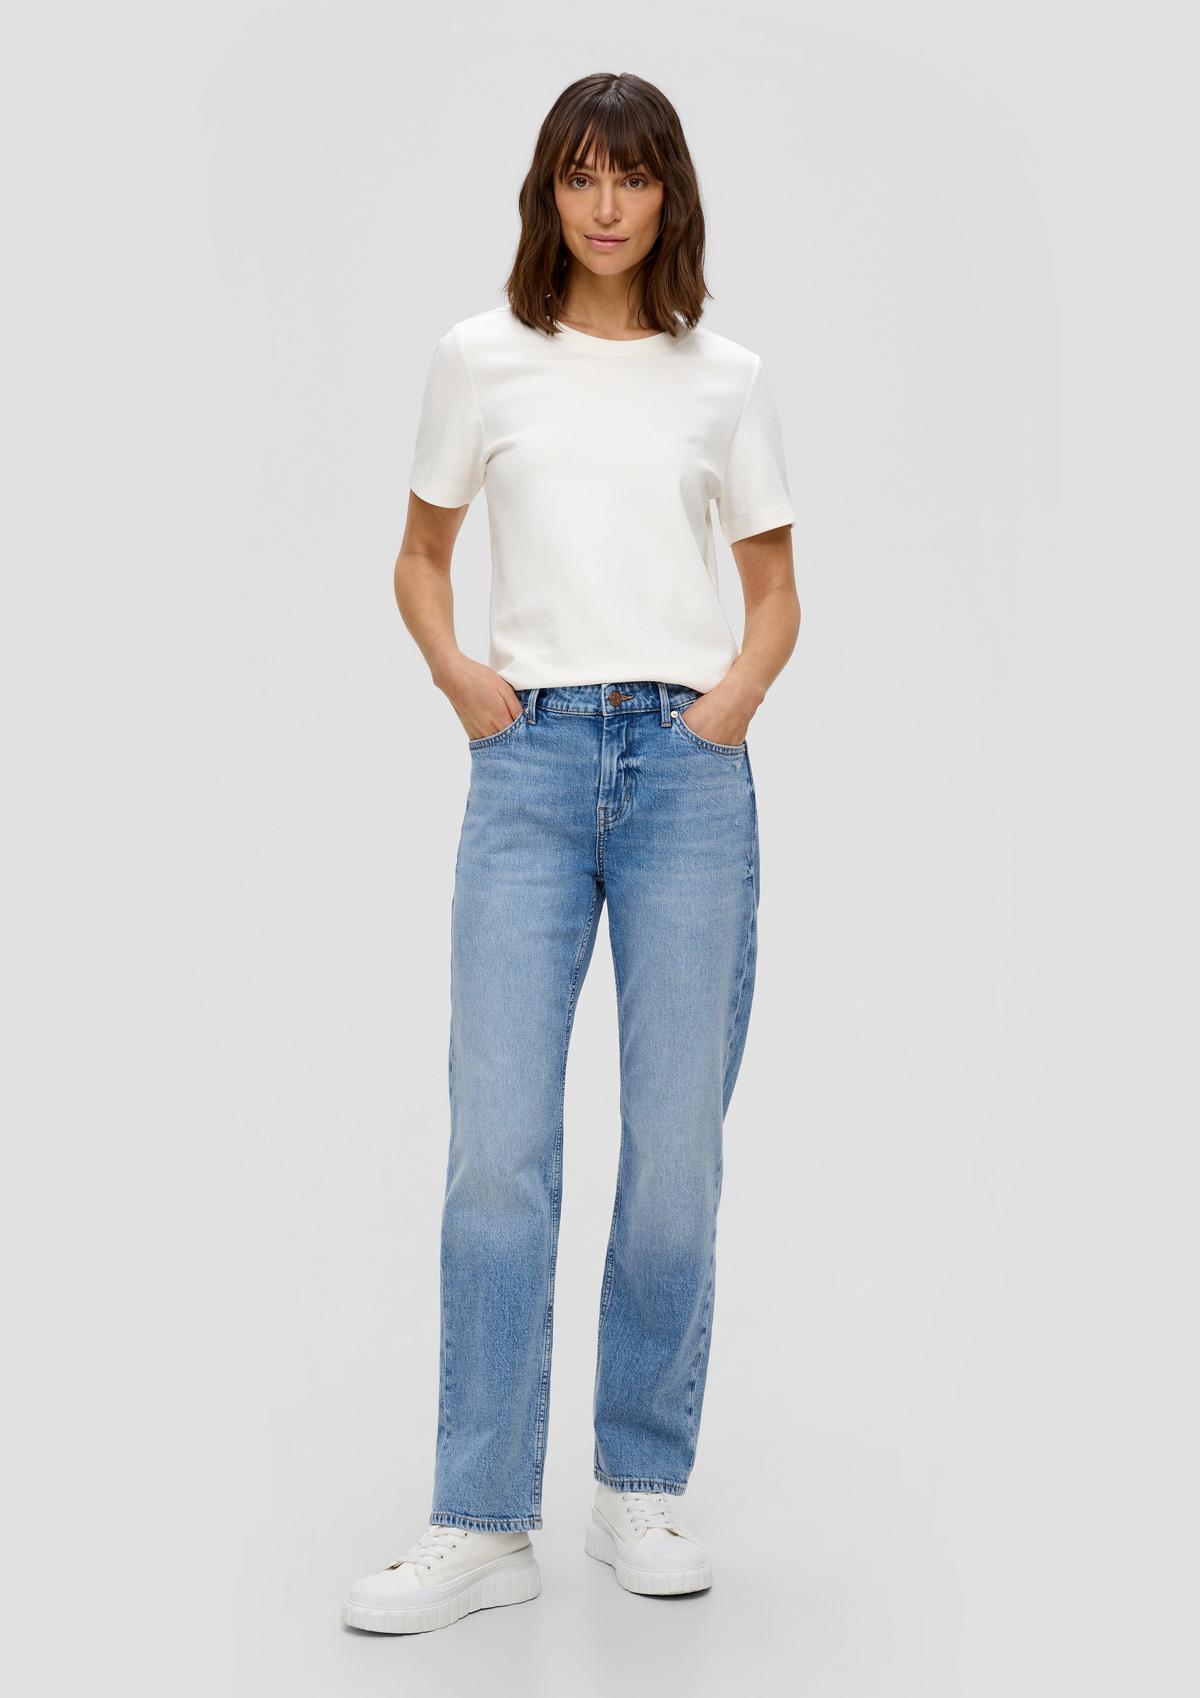 Jeans hlače Karolin/kroj Regular Fit/Mid Rise/ravne hlačnice